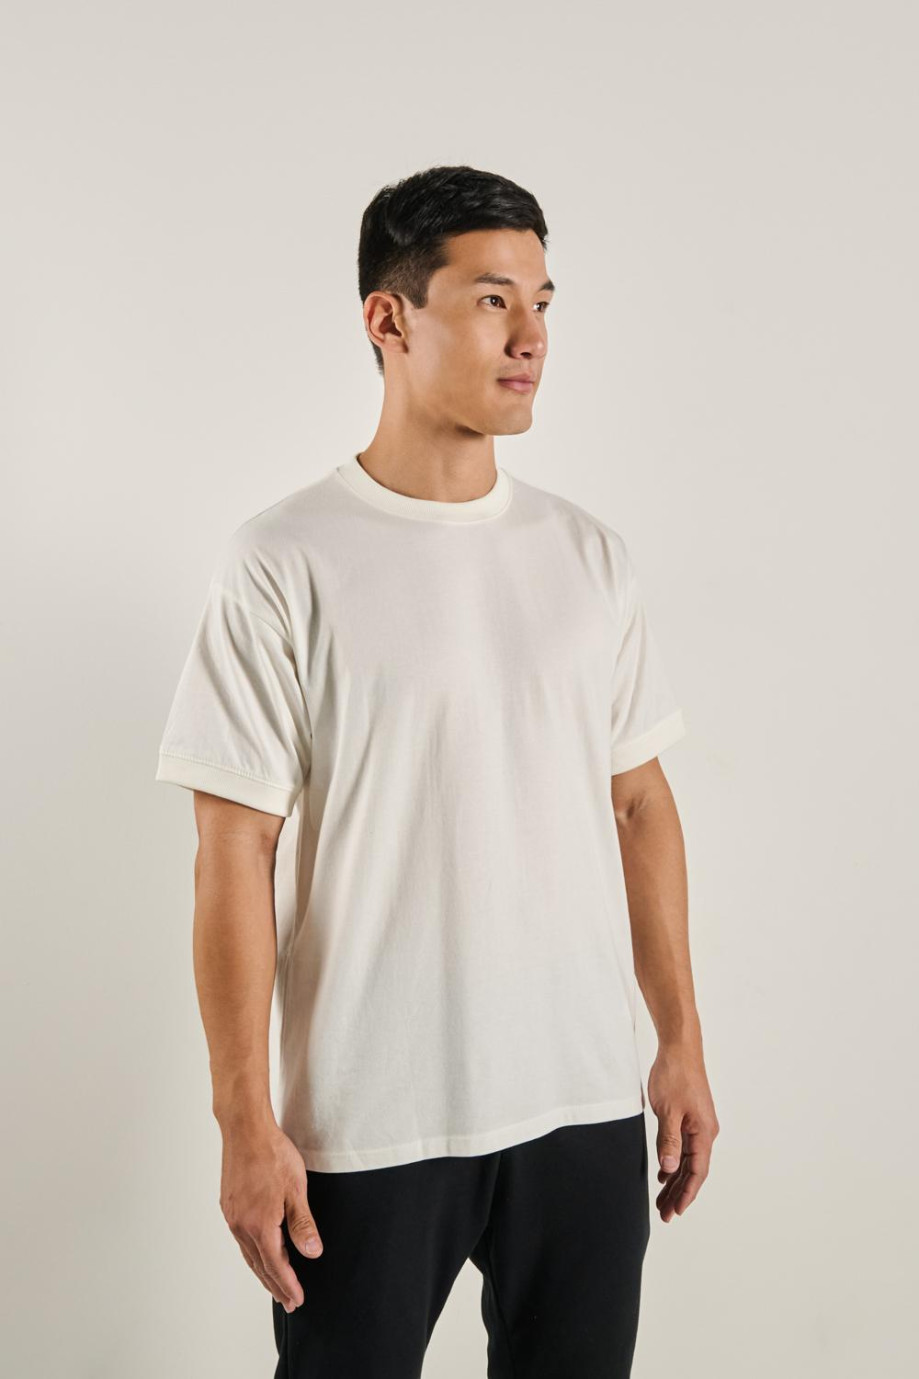 Camiseta para hombre unicolor, oversize puños y cuello en rib, manga corta.